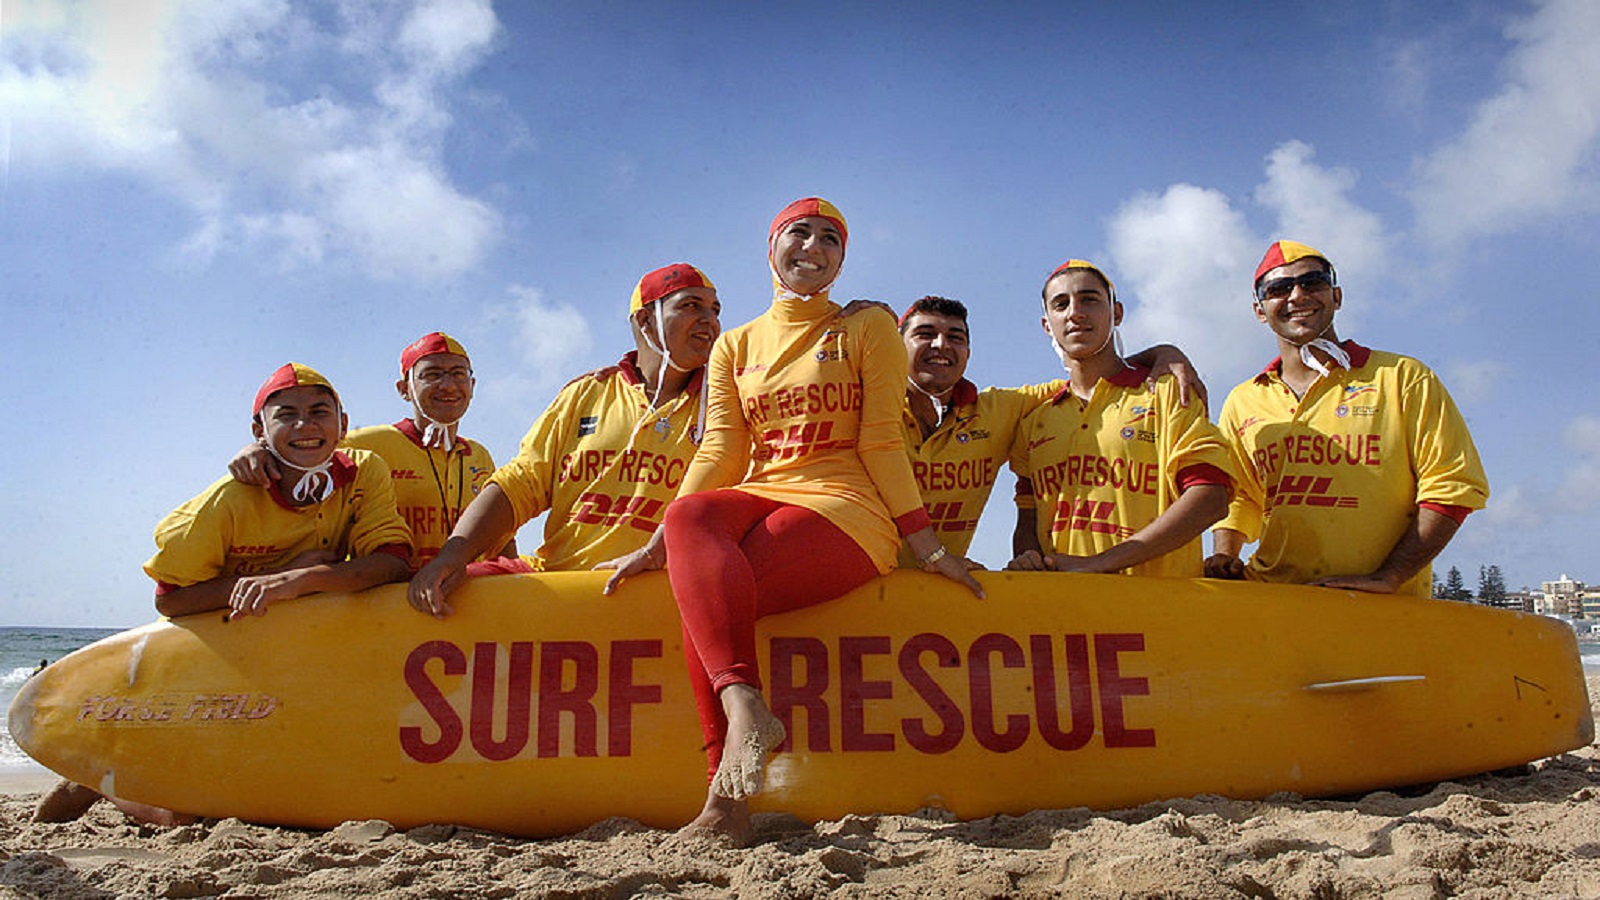 مكة لالا، المتطوعة في فريق الإنقاذ البحري، مع زملائها على شاطئ سيدني (غيتي)